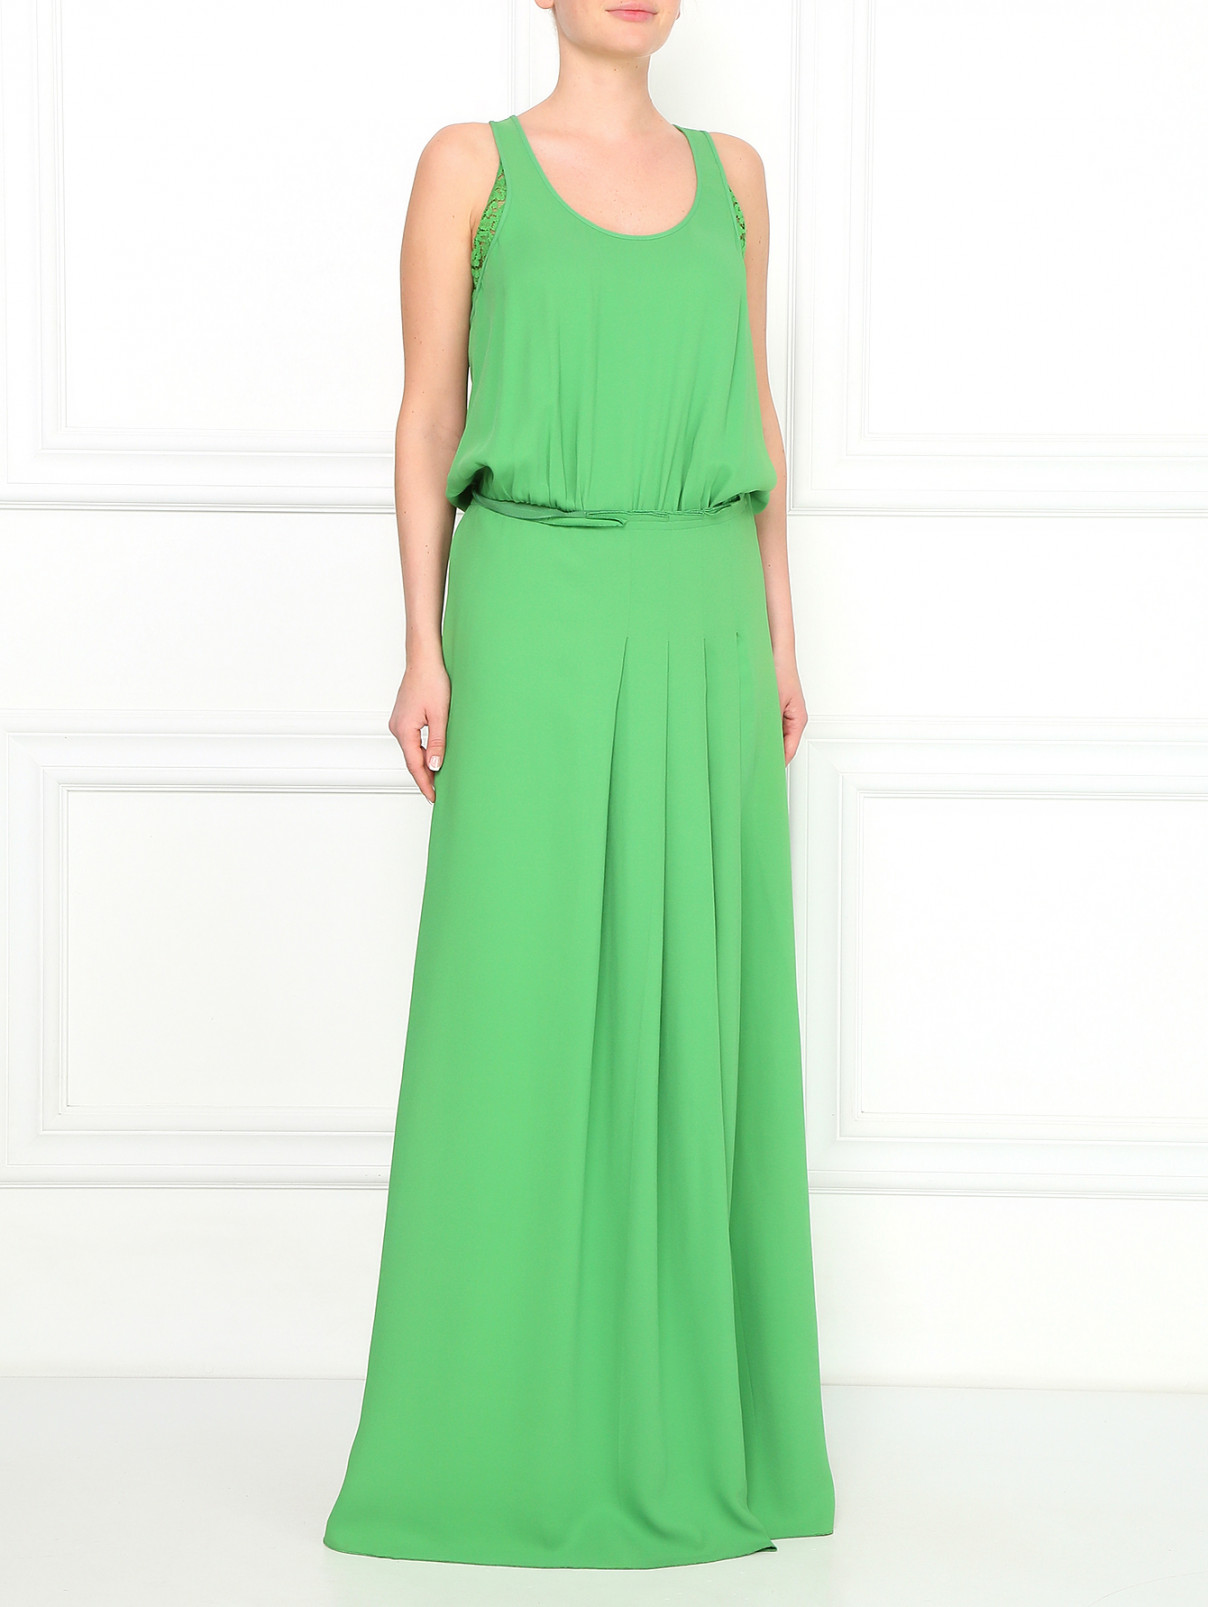 Платье-макси с вставками из кружева N21  –  Модель Общий вид  – Цвет:  Зеленый